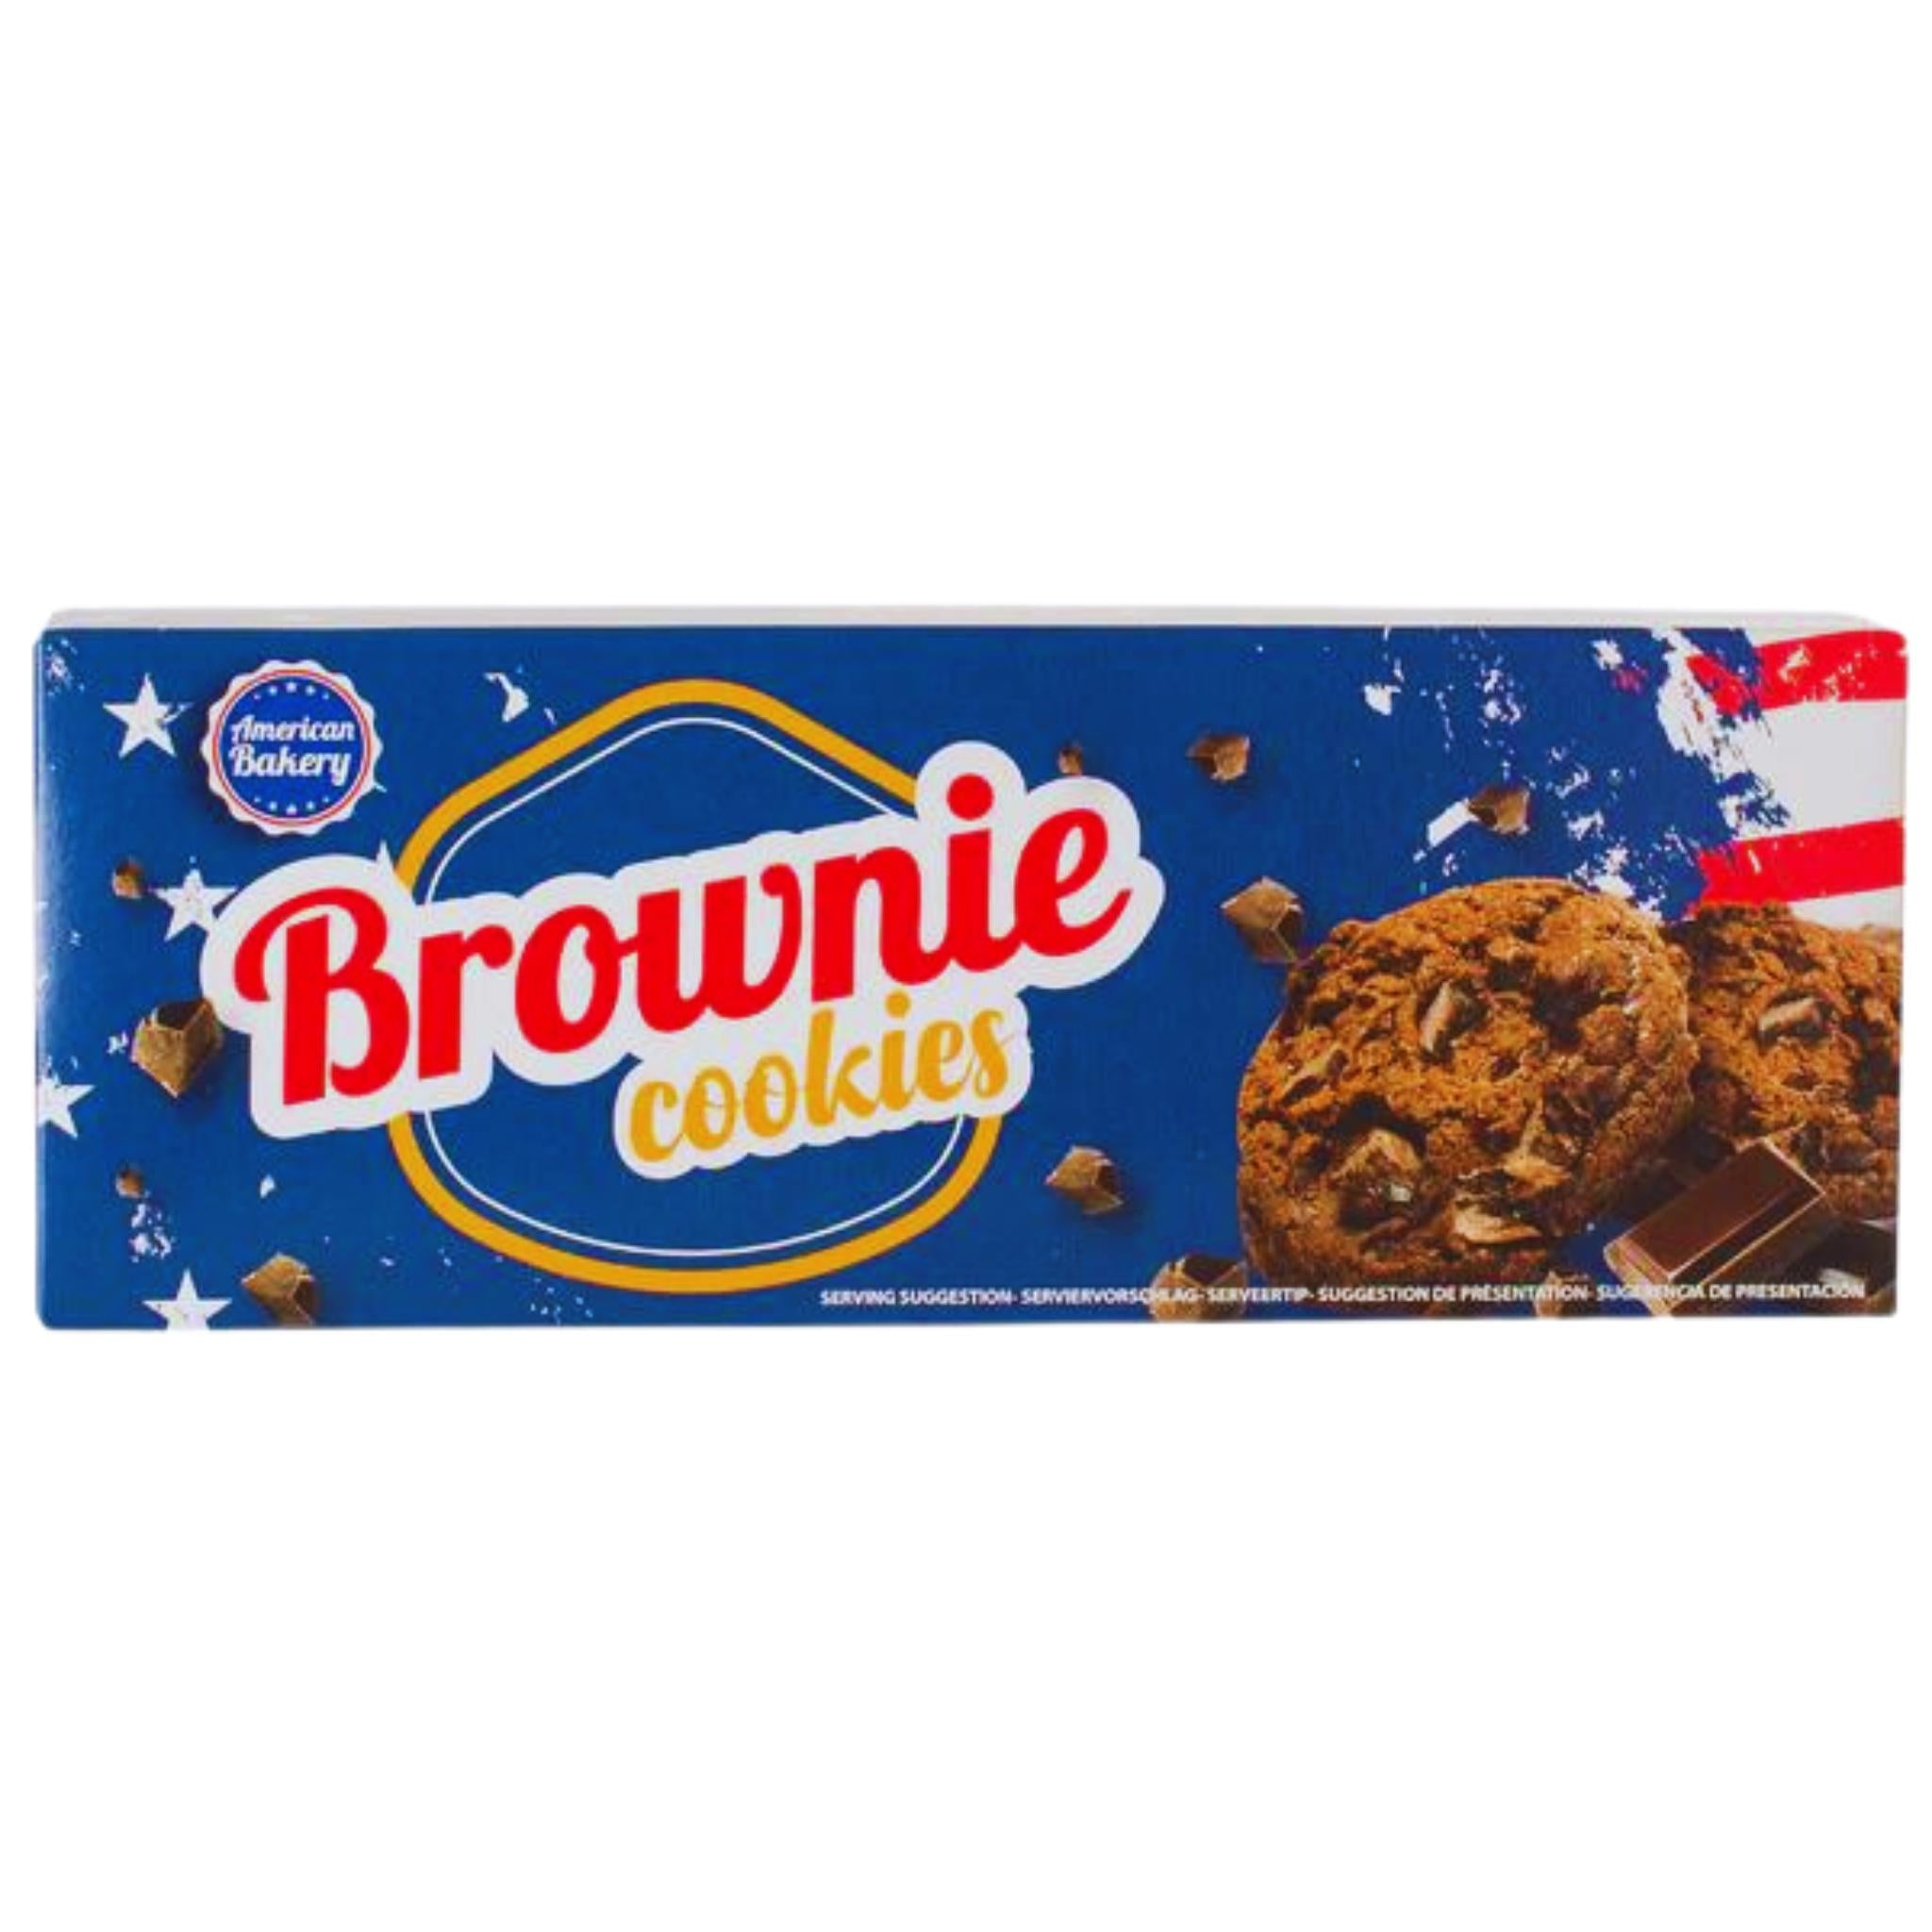 American Bakery Brownie Cookies - 106g